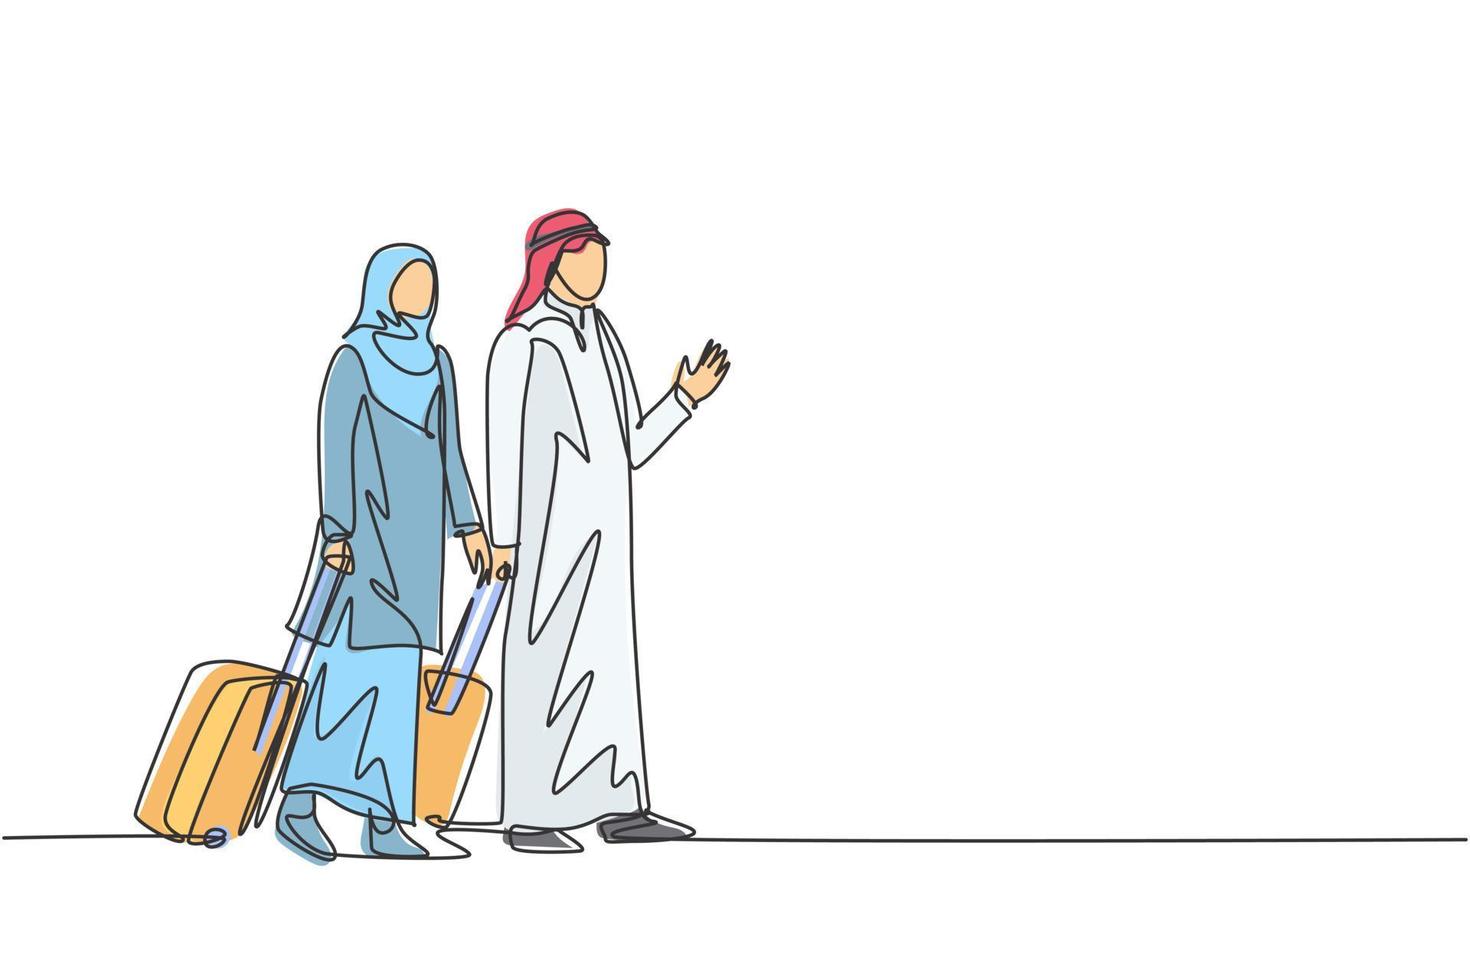 Eine einzige Strichzeichnung junger glücklicher männlicher und weiblicher muslimischer Mitarbeiter nach einer Geschäftsreise. Saudi-Arabien Tuch Shmag, Kandora, Thobe, Ghutra, Hijab. durchgehende Linie zeichnen Design-Vektor-Illustration vektor